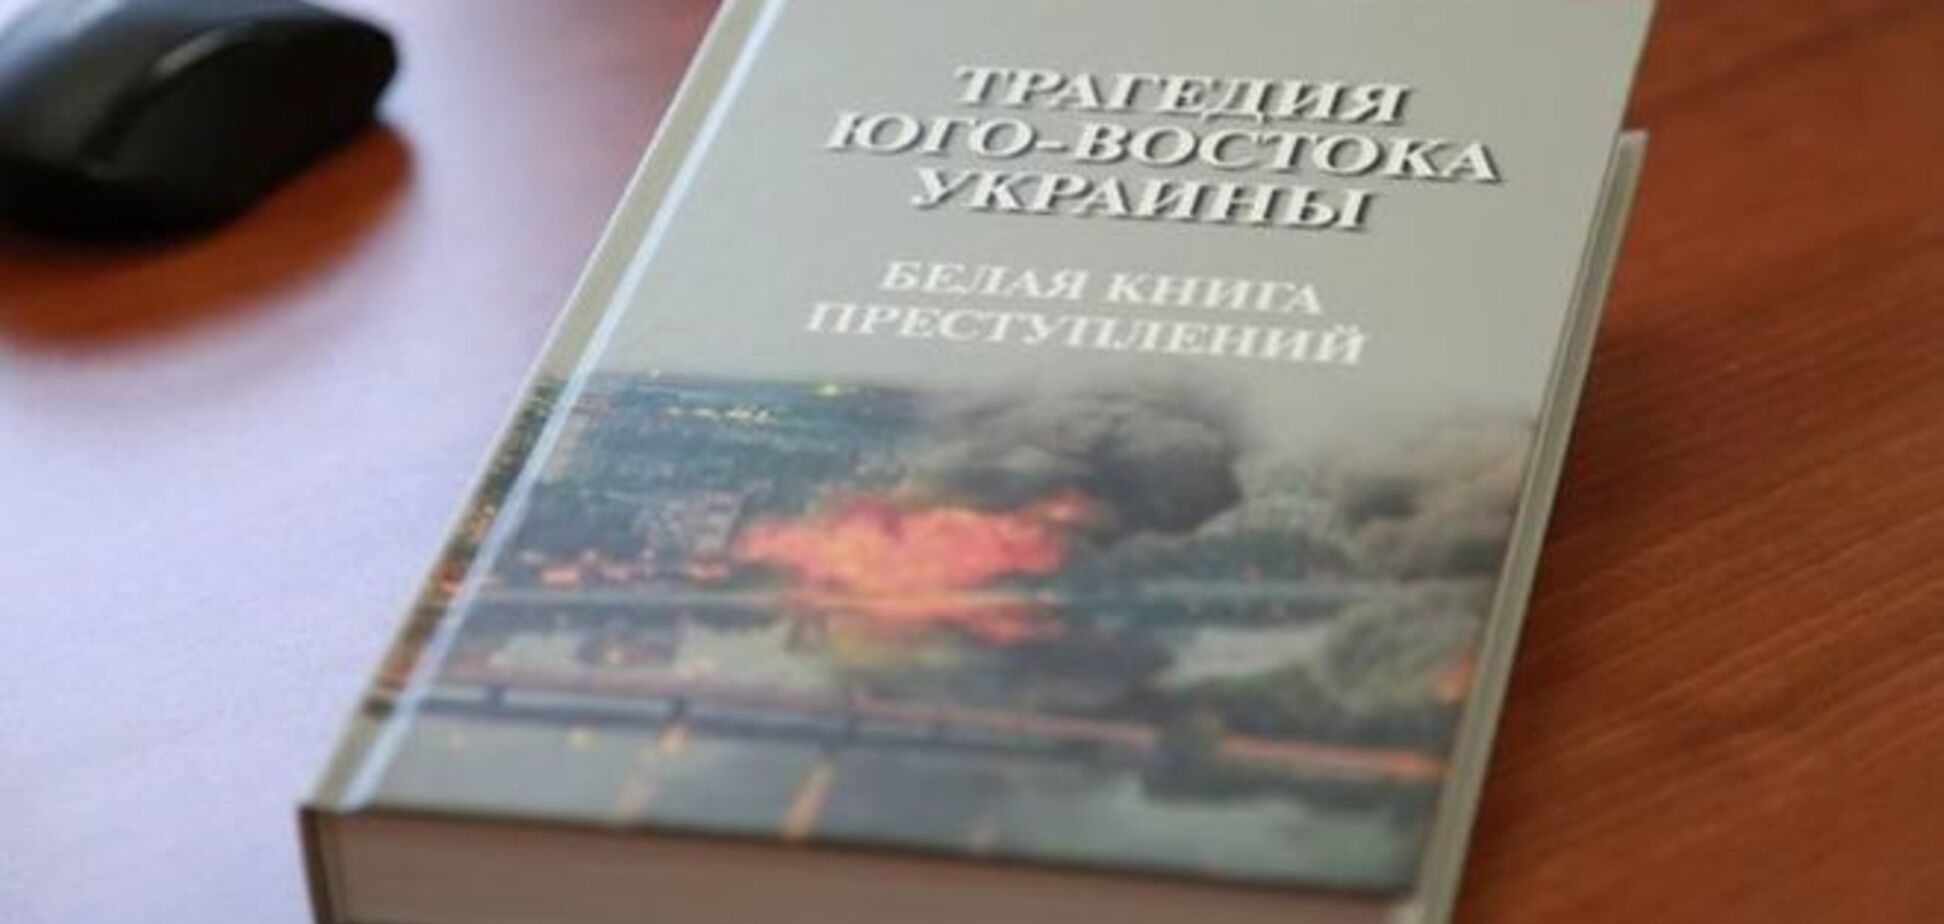 Следком России на основе фейкового фото состряпал книгу о 'преступлениях СБУ'